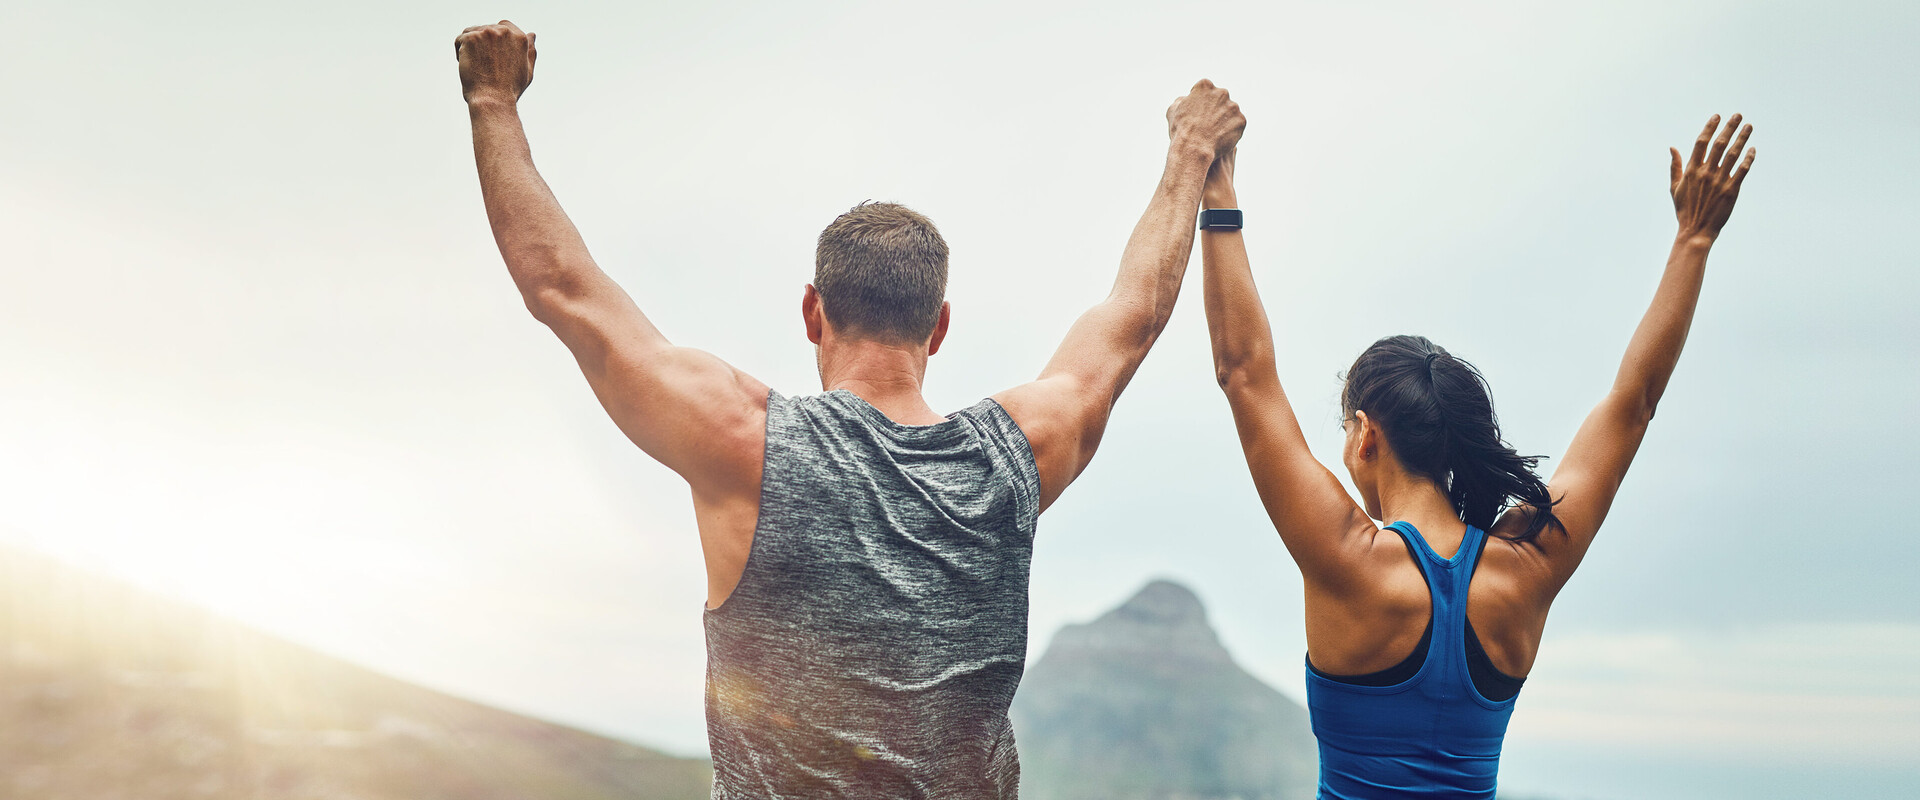 Ein sportliches Paar vor alpiner Kulisse reckt triumphierend die Arme in den Himmel. Das Bild illustriert das Thema Körperpflege für einen fitten Körper. 